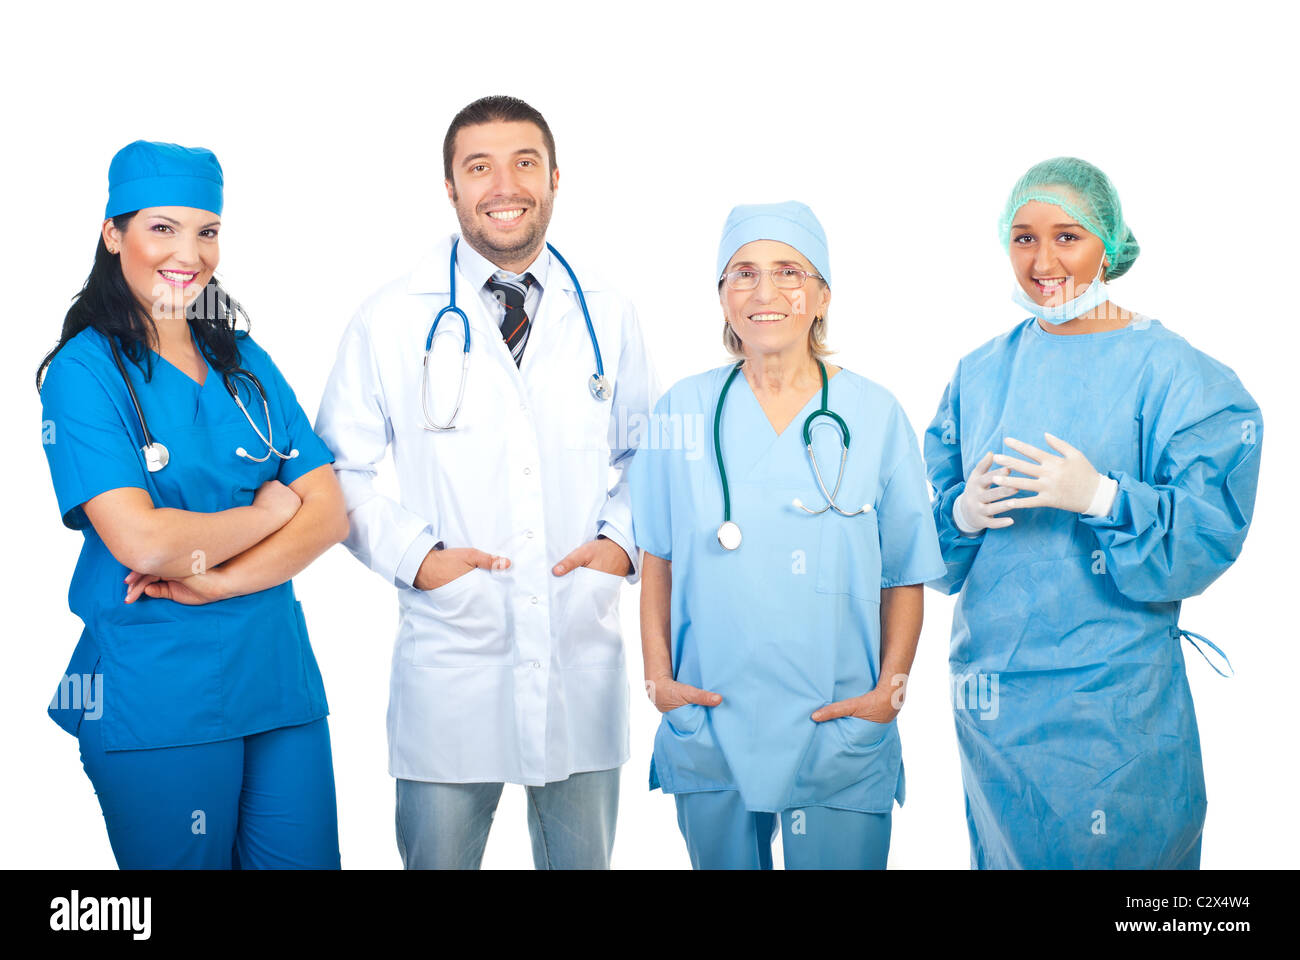 Heureux quatre médecins de l'hôpital standing in a row isolé sur fond blanc Banque D'Images